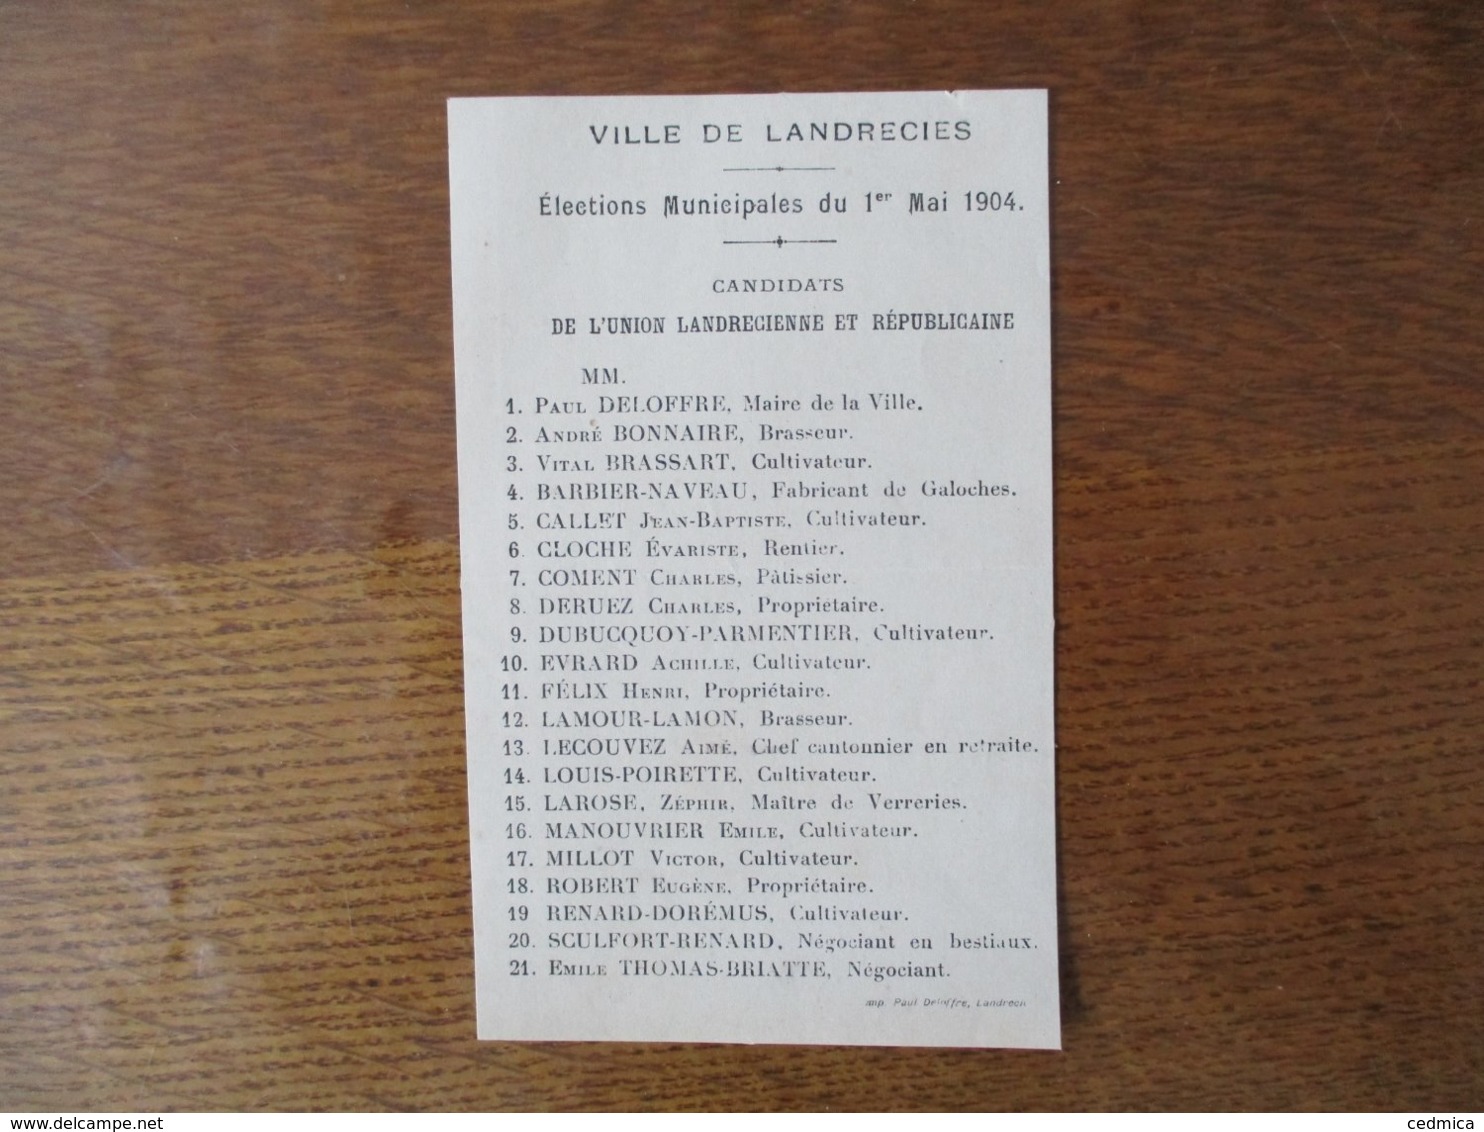 LANDRECIES ELECTIONS MUNICIPALES DU 1er MAI 1904 CANDIDATS DE L'UNION LANDRECIENNE ET REPUBLICAINE - Documents Historiques